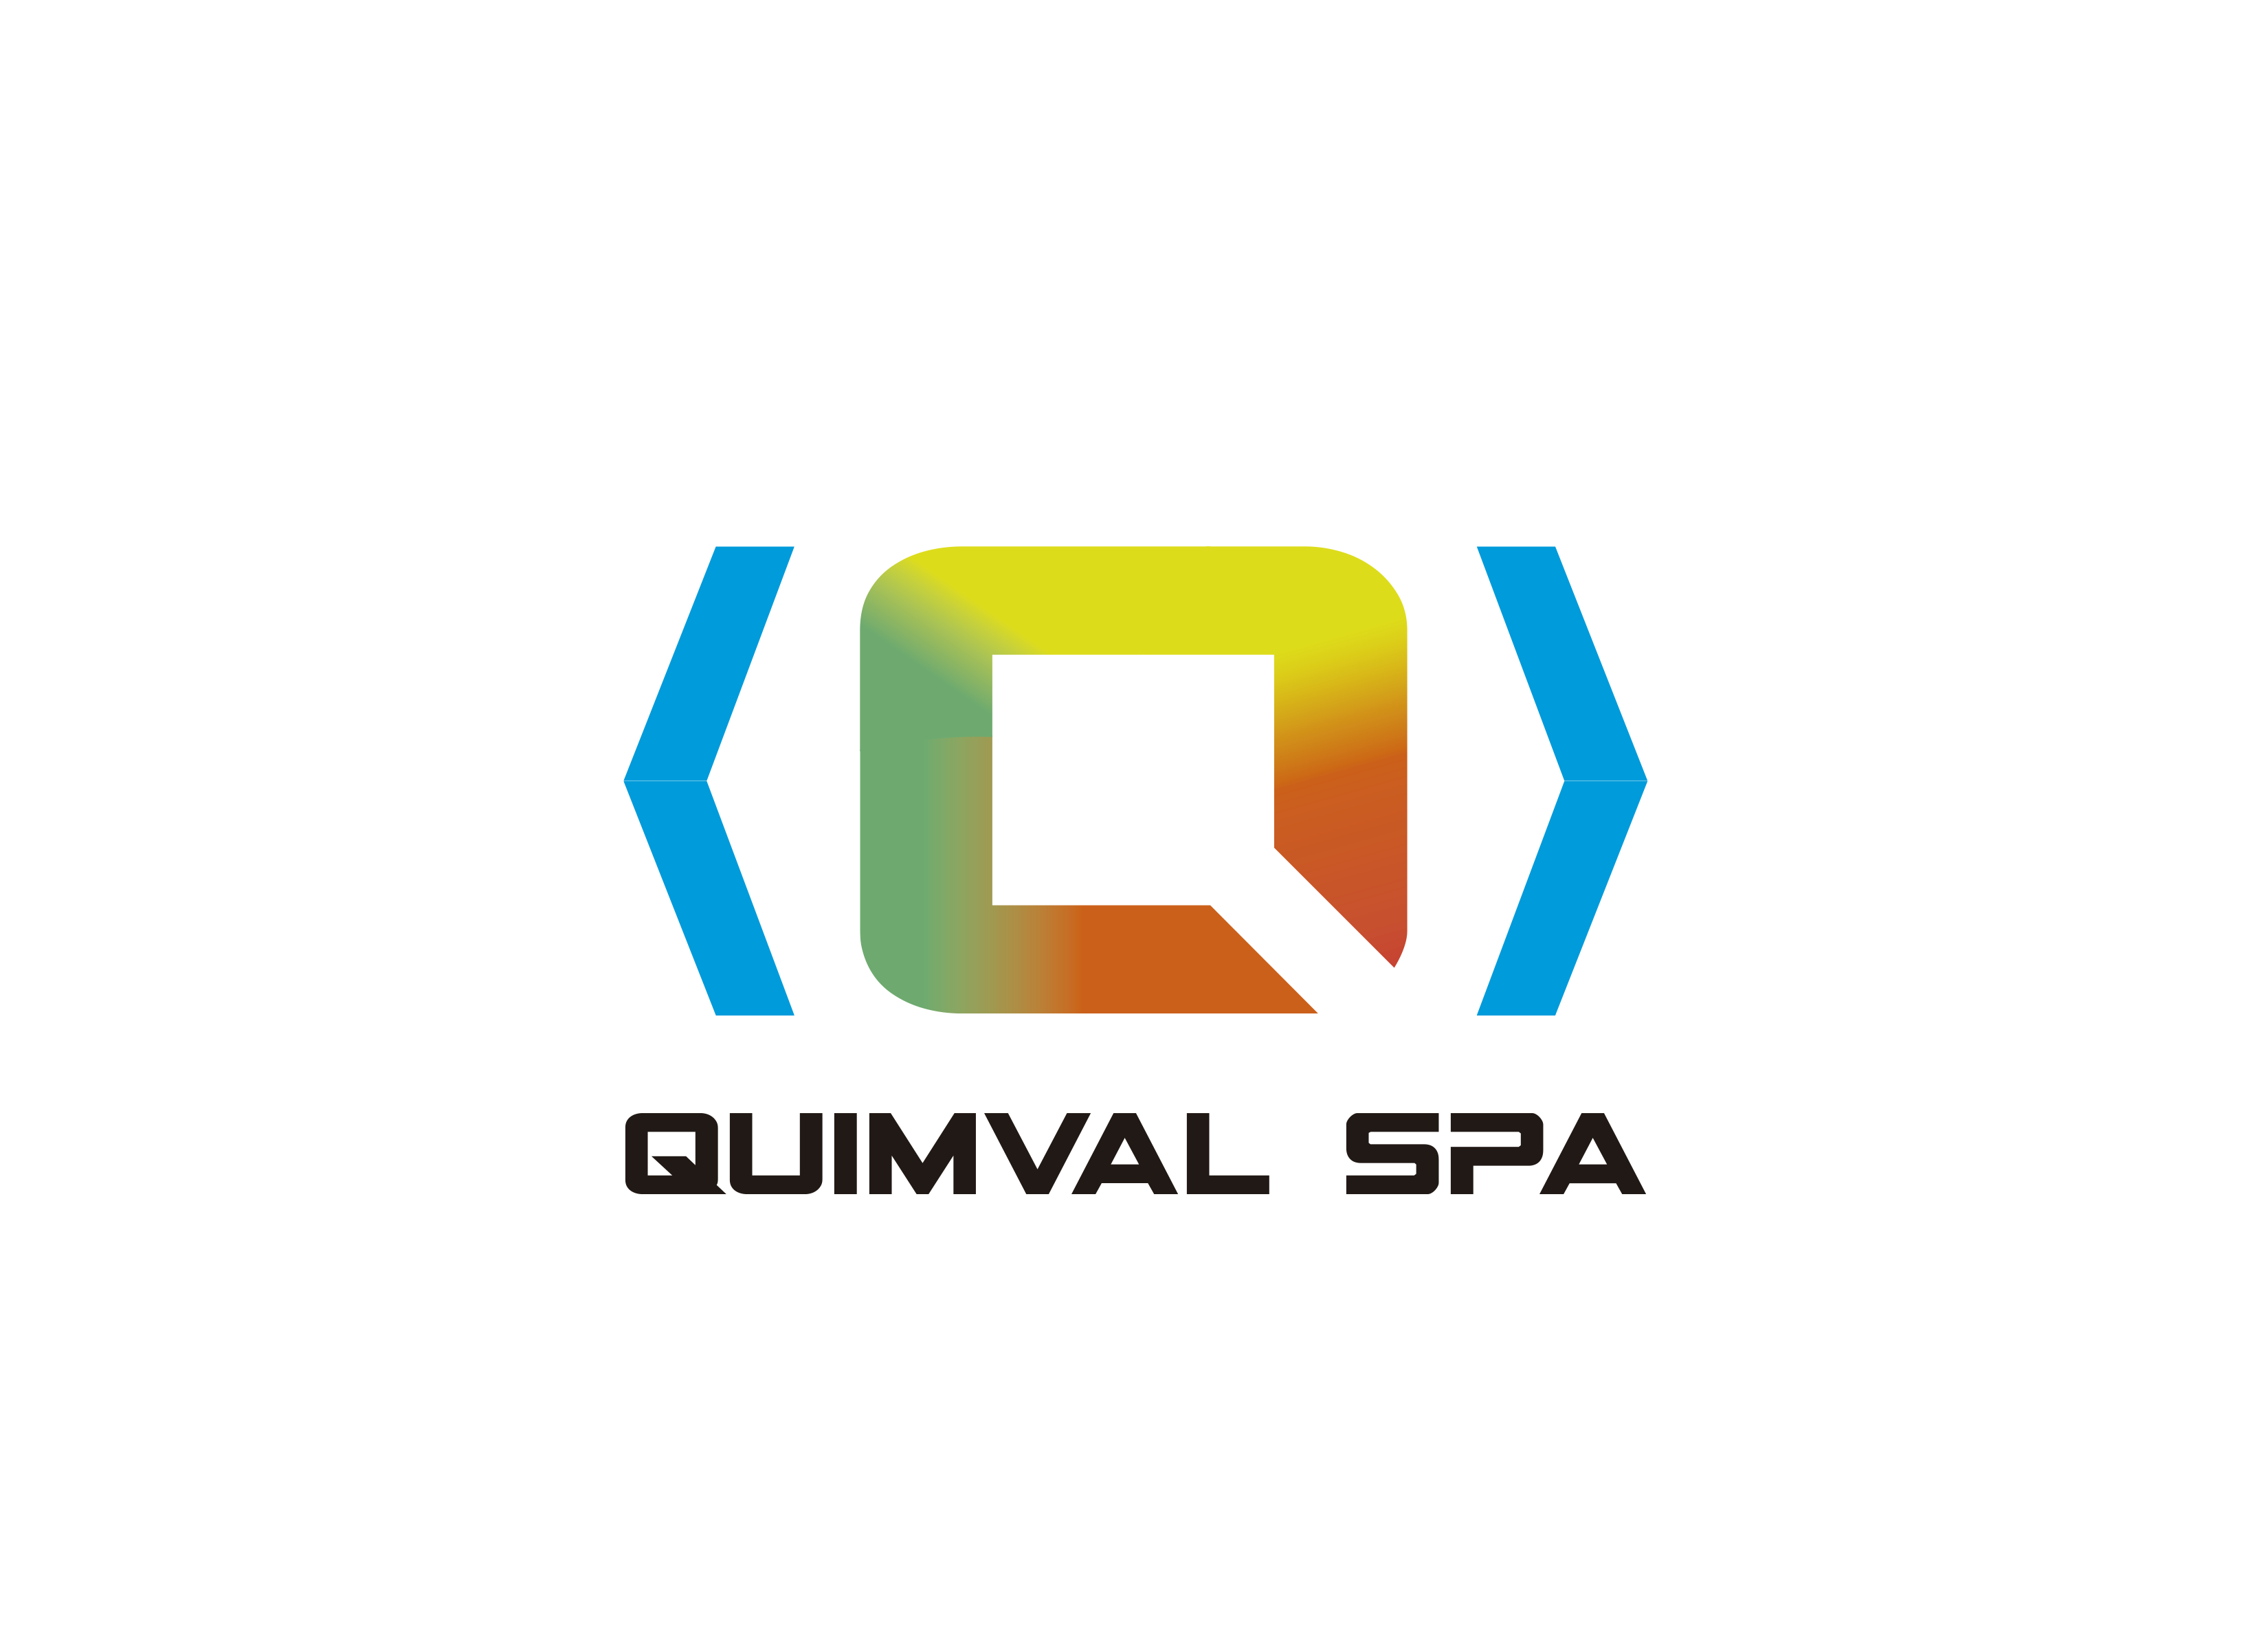 QuimvalSpA